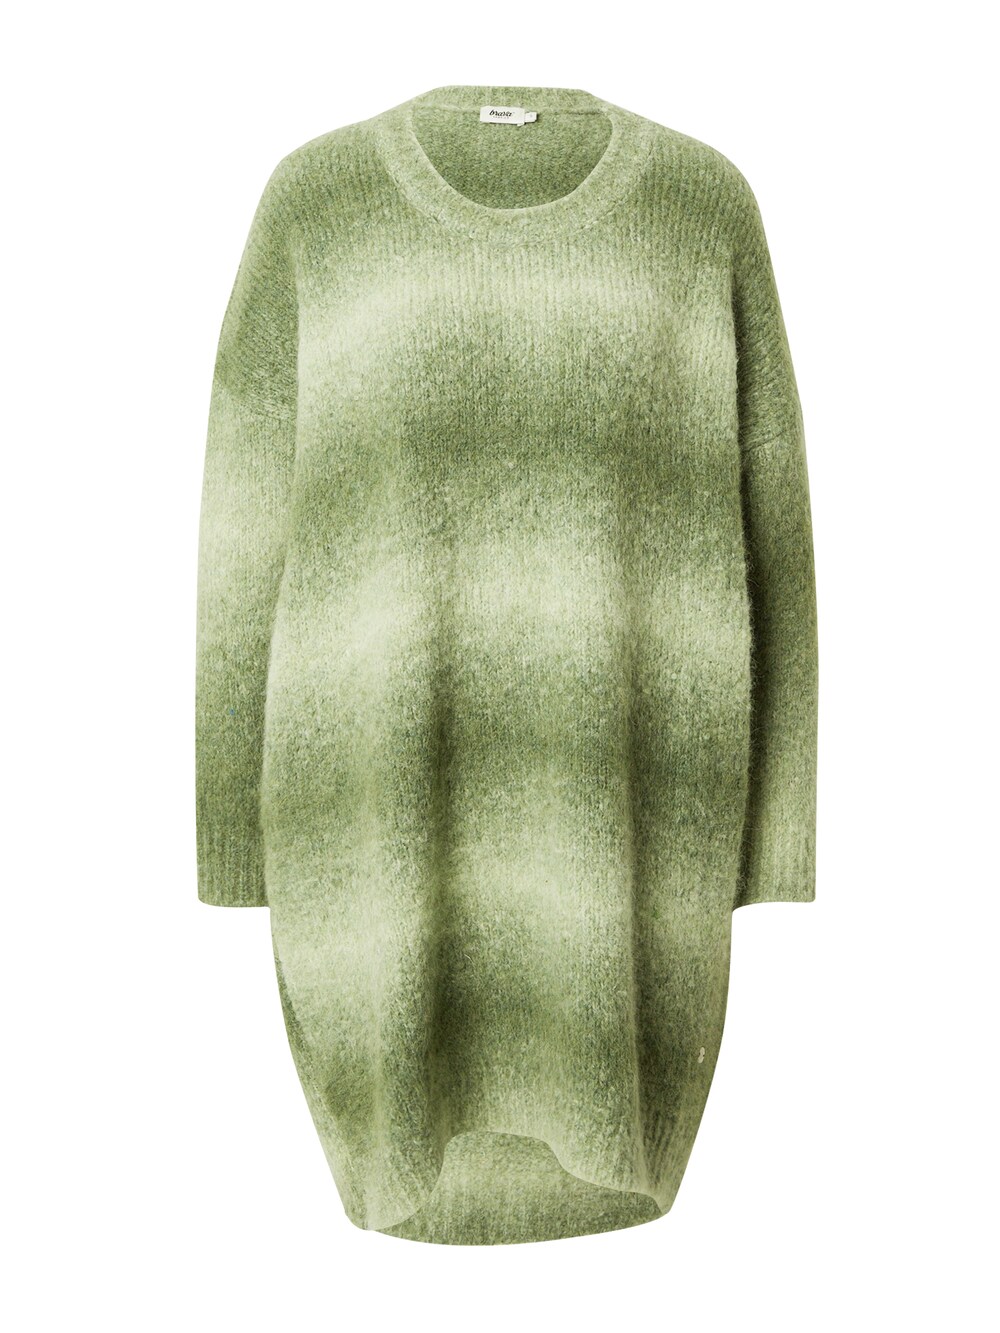 Вязанное платье Brava Fabrics, зеленое яблоко жилет norway зеленое яблоко размер l